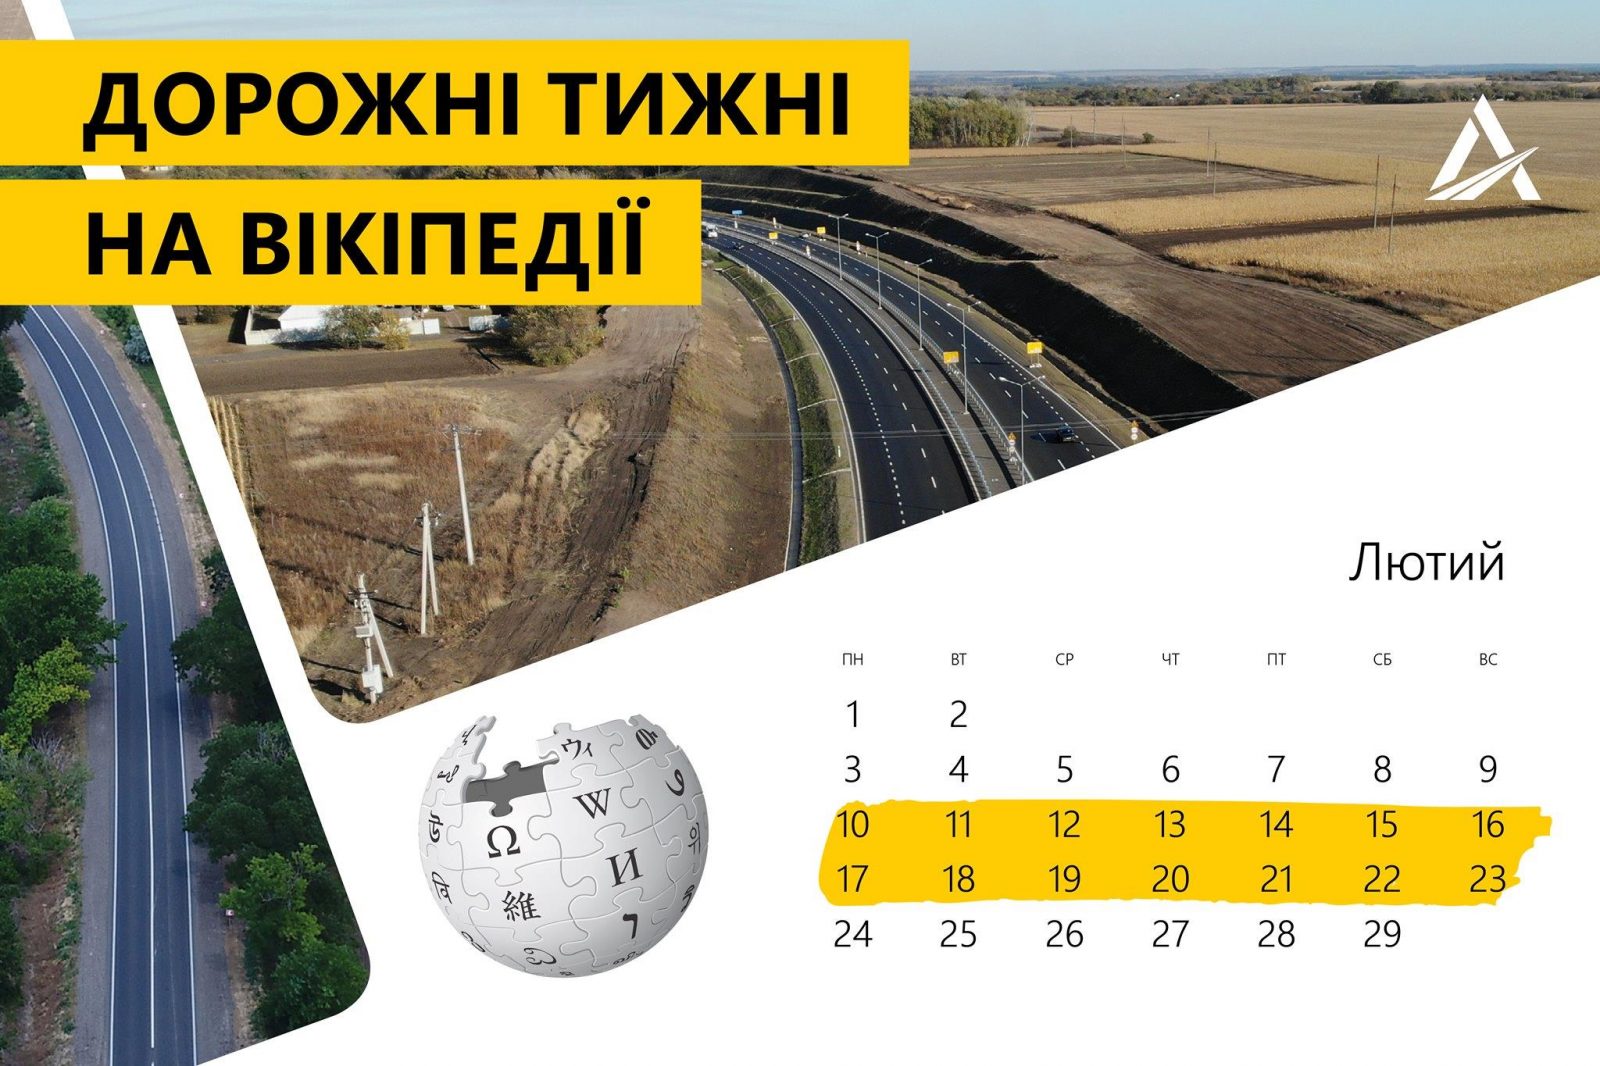 Укравтодор приглашает всех желающих высказаться об украинских дорогах в википедии